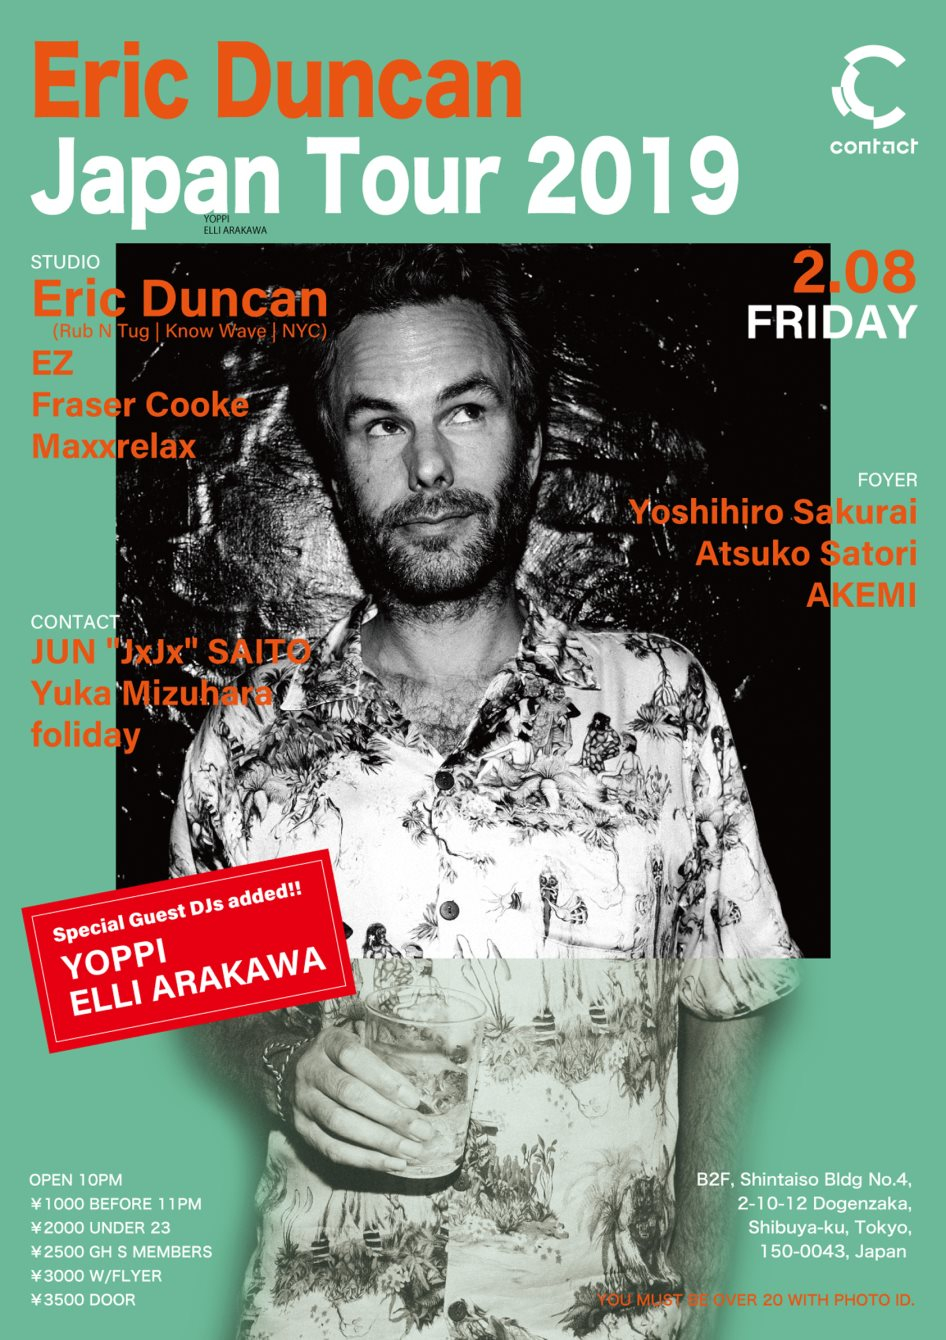 Eric Duncan Japan Tour 2019 - Flyer front